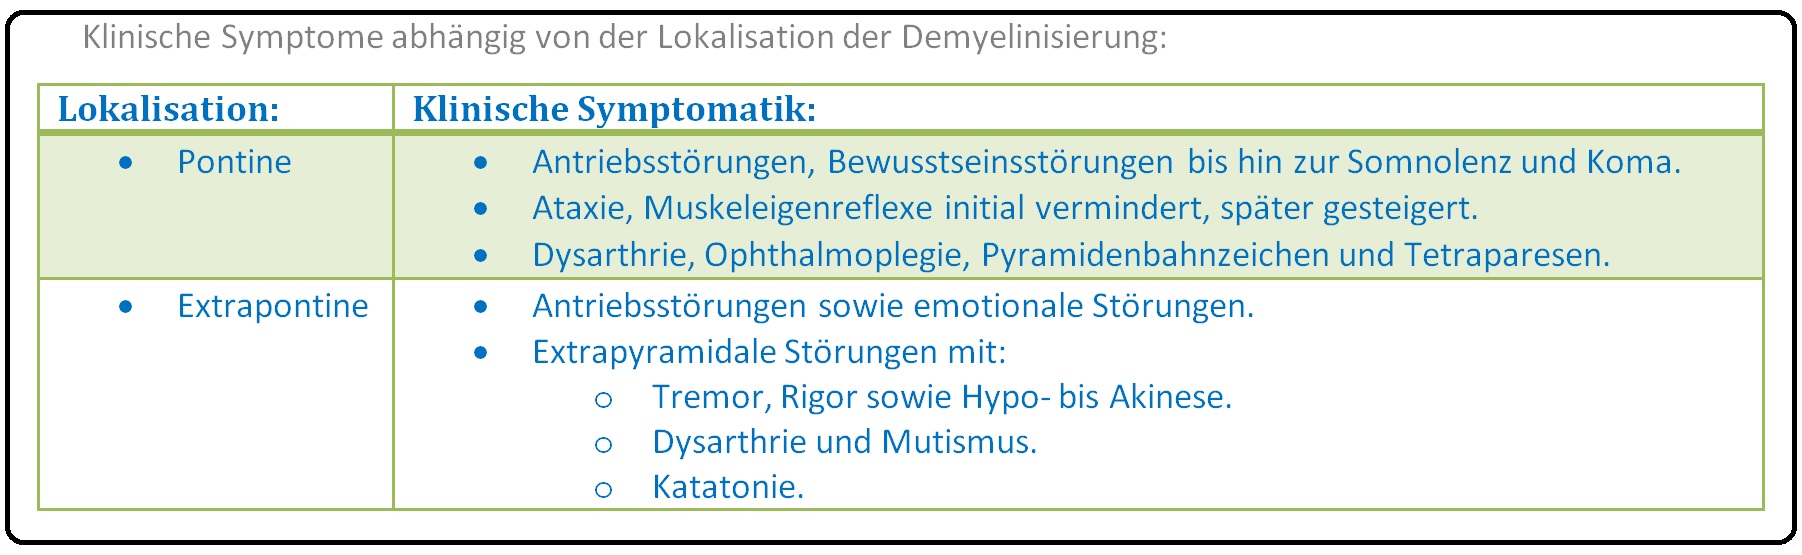 016 Klinische Symptome abhängig von der Lokalisation der Demyelinisierung